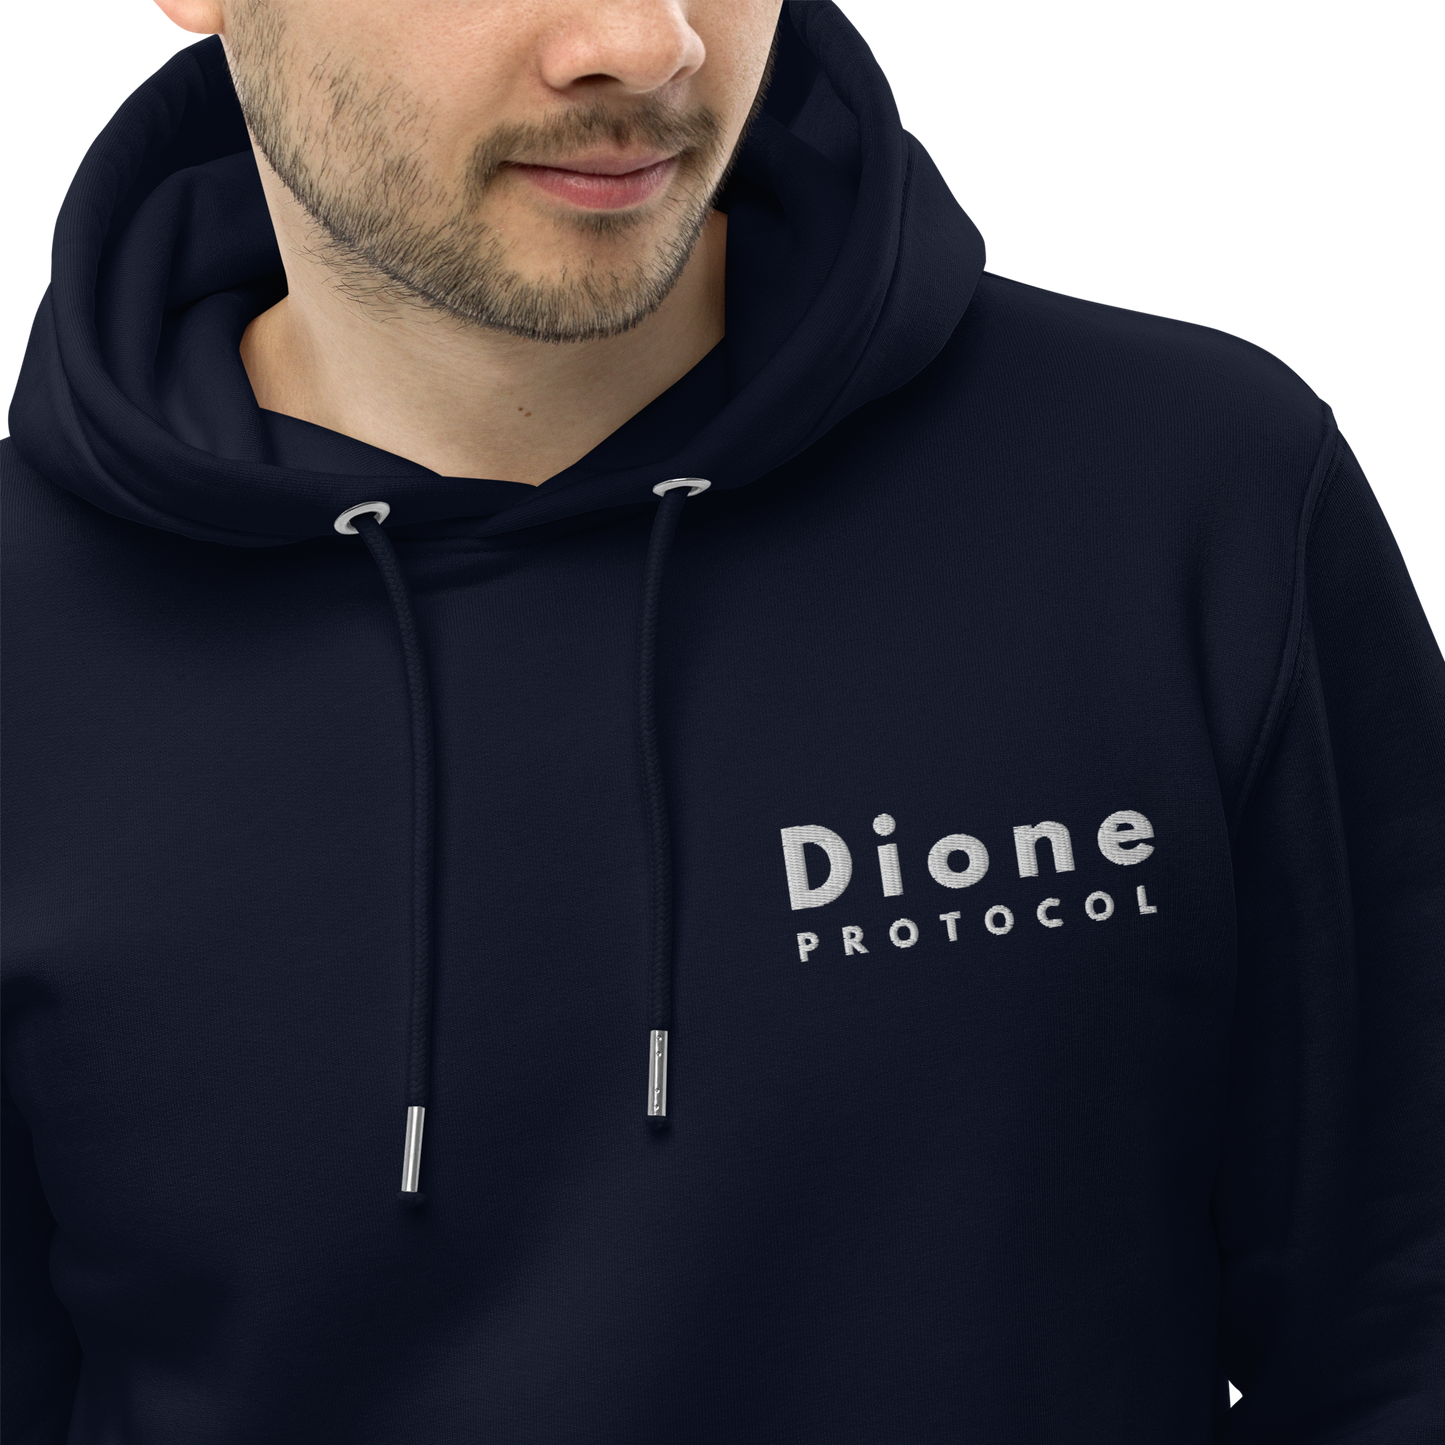 Hoodie - Dione V1.0 - Black/Navy - Premium